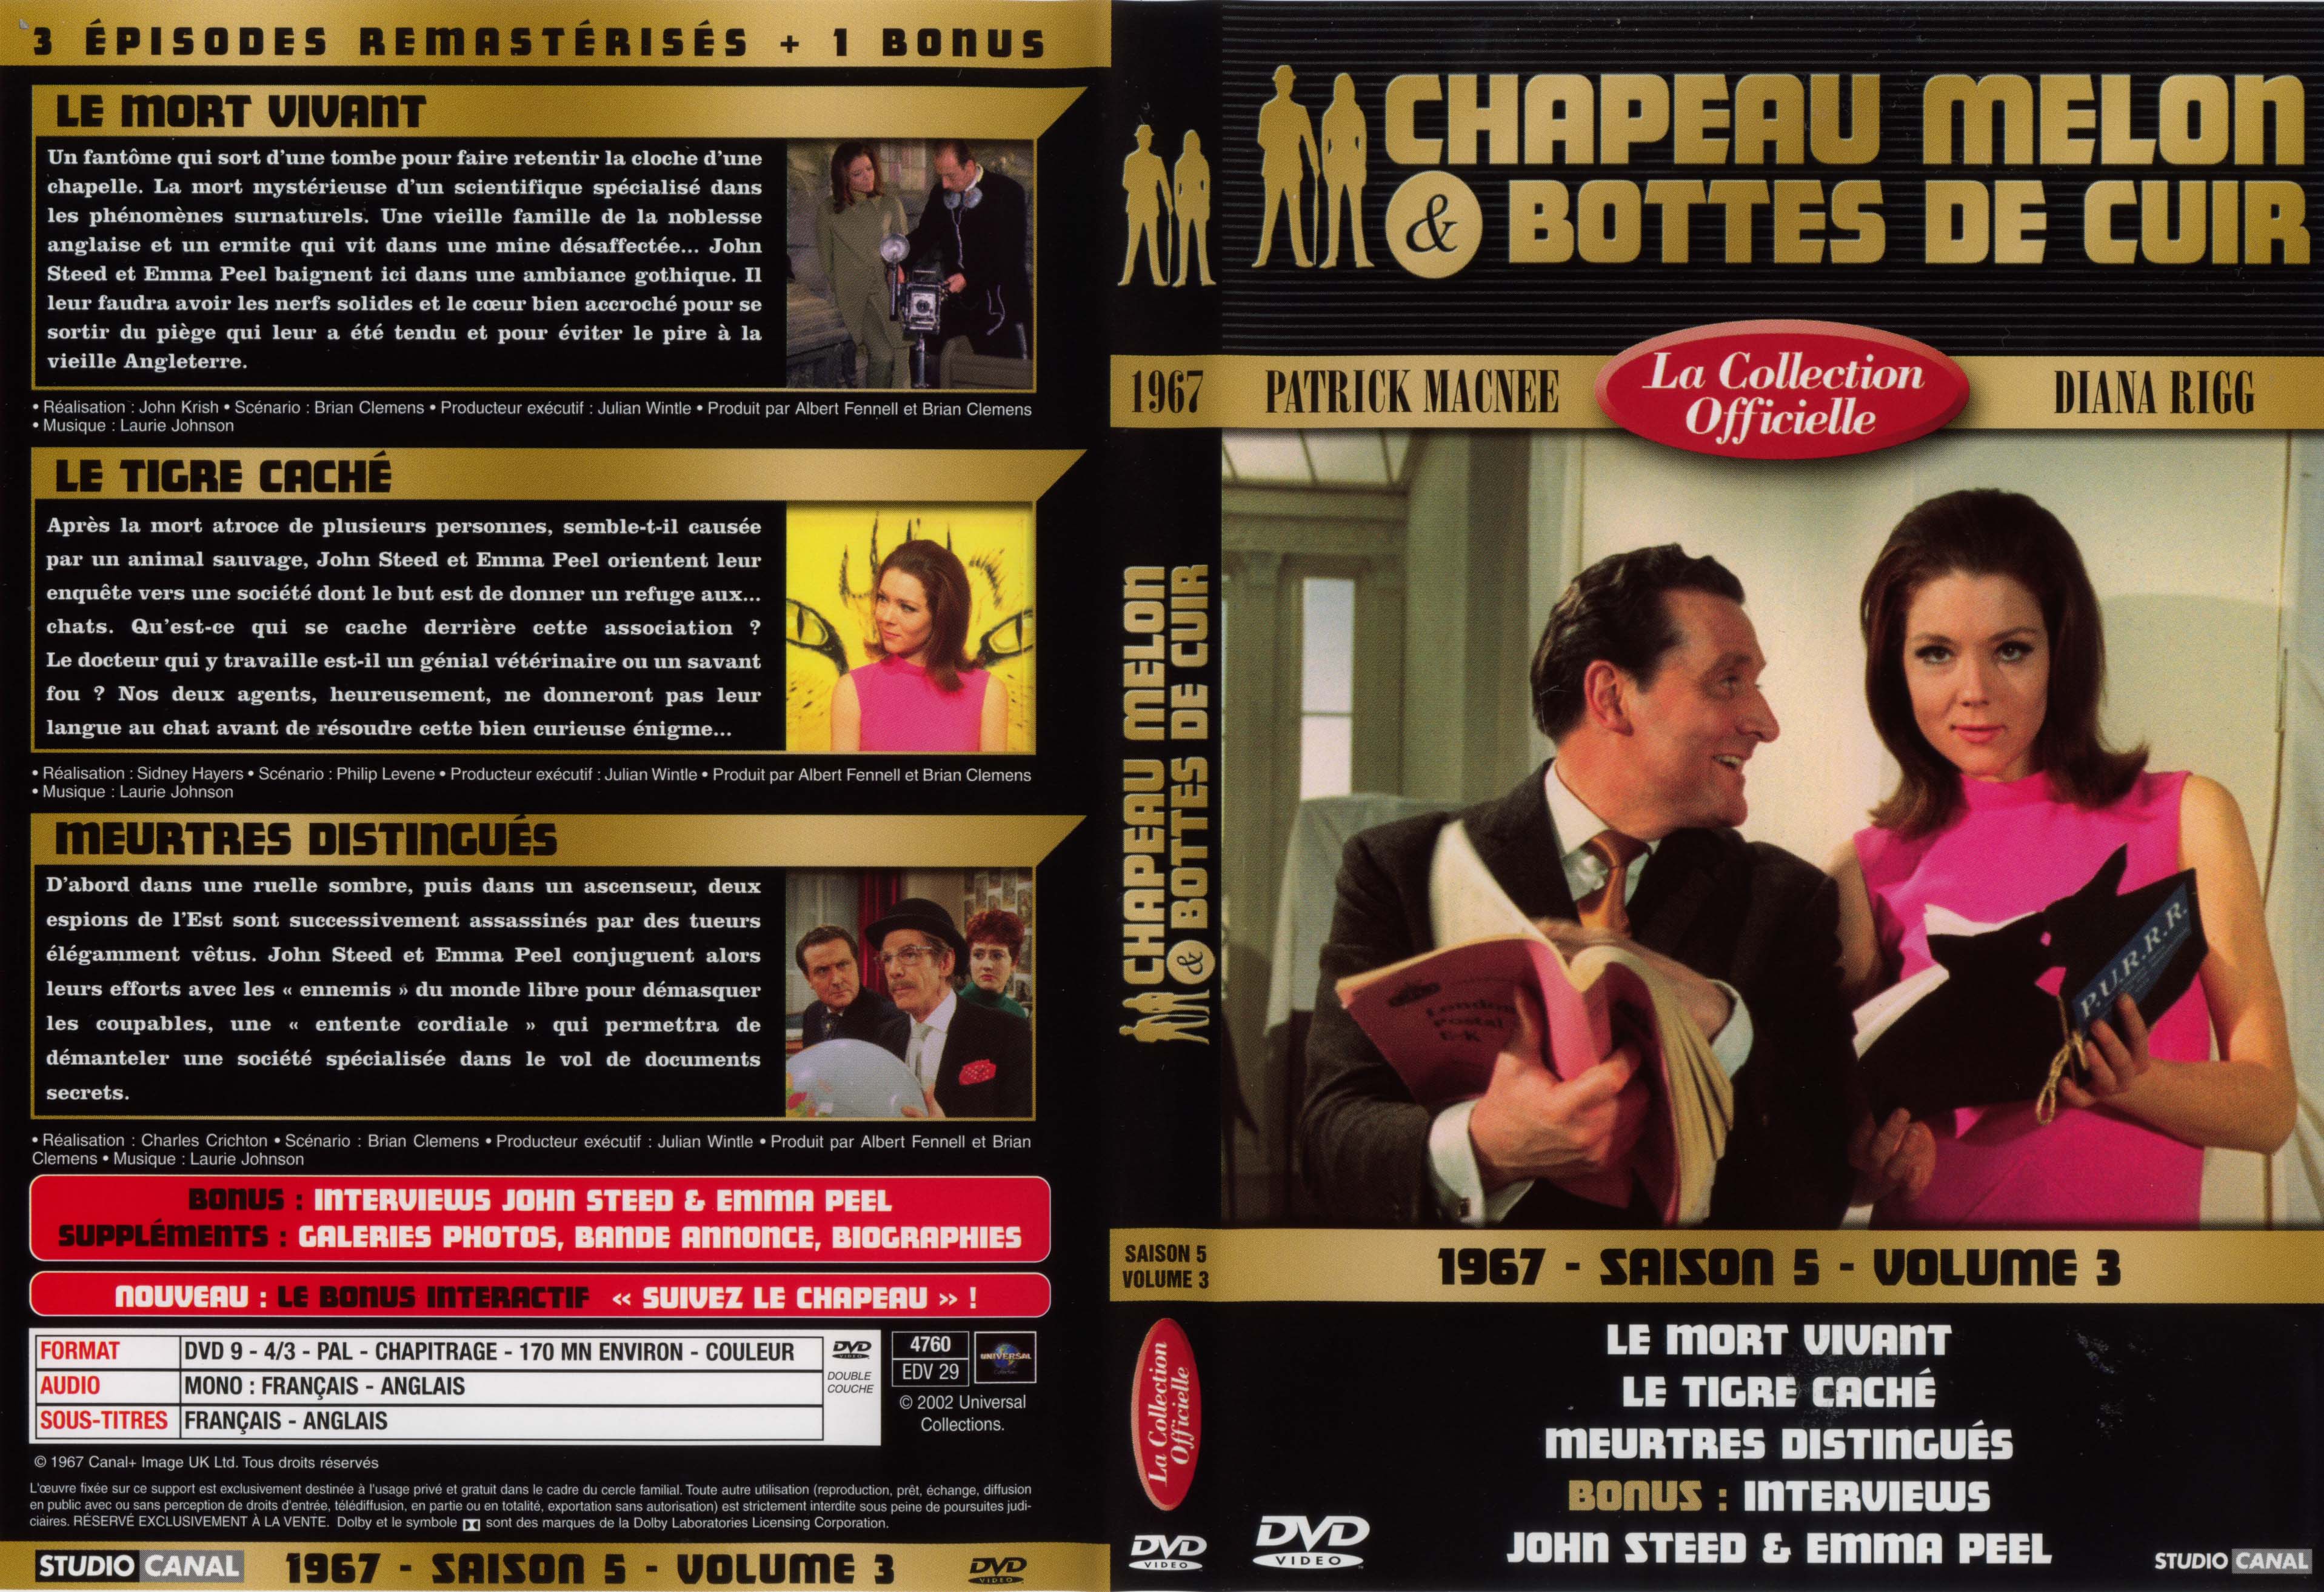 Jaquette DVD Chapeau melon et bottes de cuir 1967 saison 5 vol 3